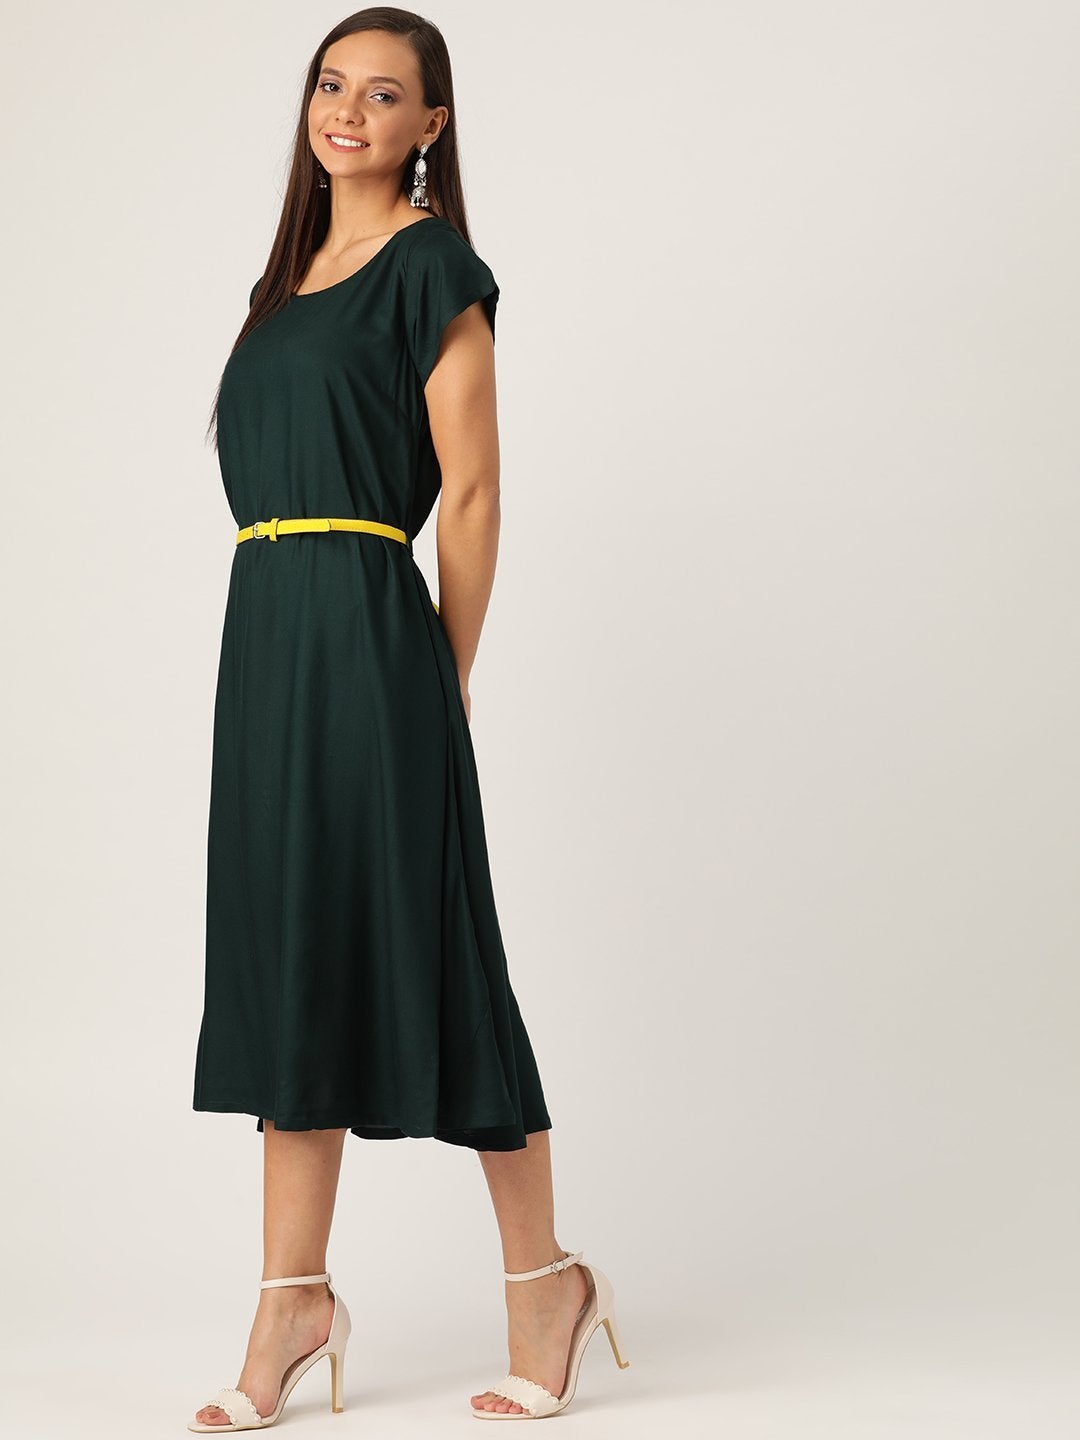 Women's Dark Green Dress Yellow Belt - InWeave